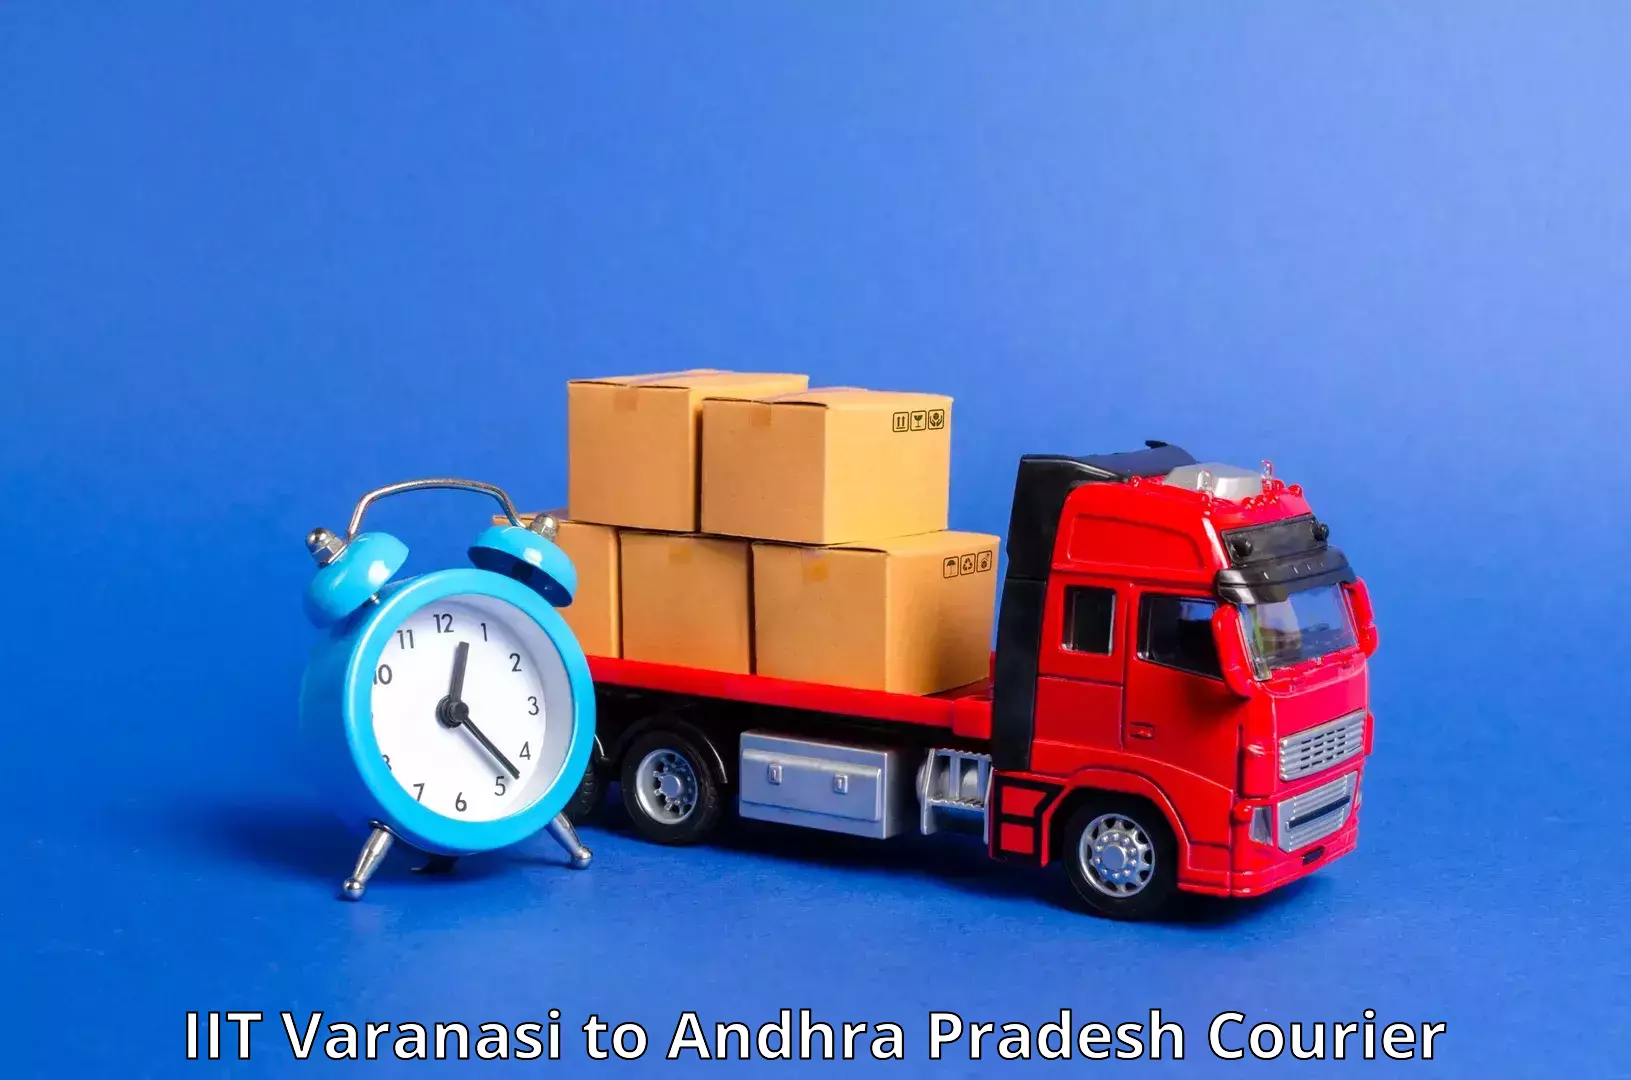 Urban courier service IIT Varanasi to Naidupeta